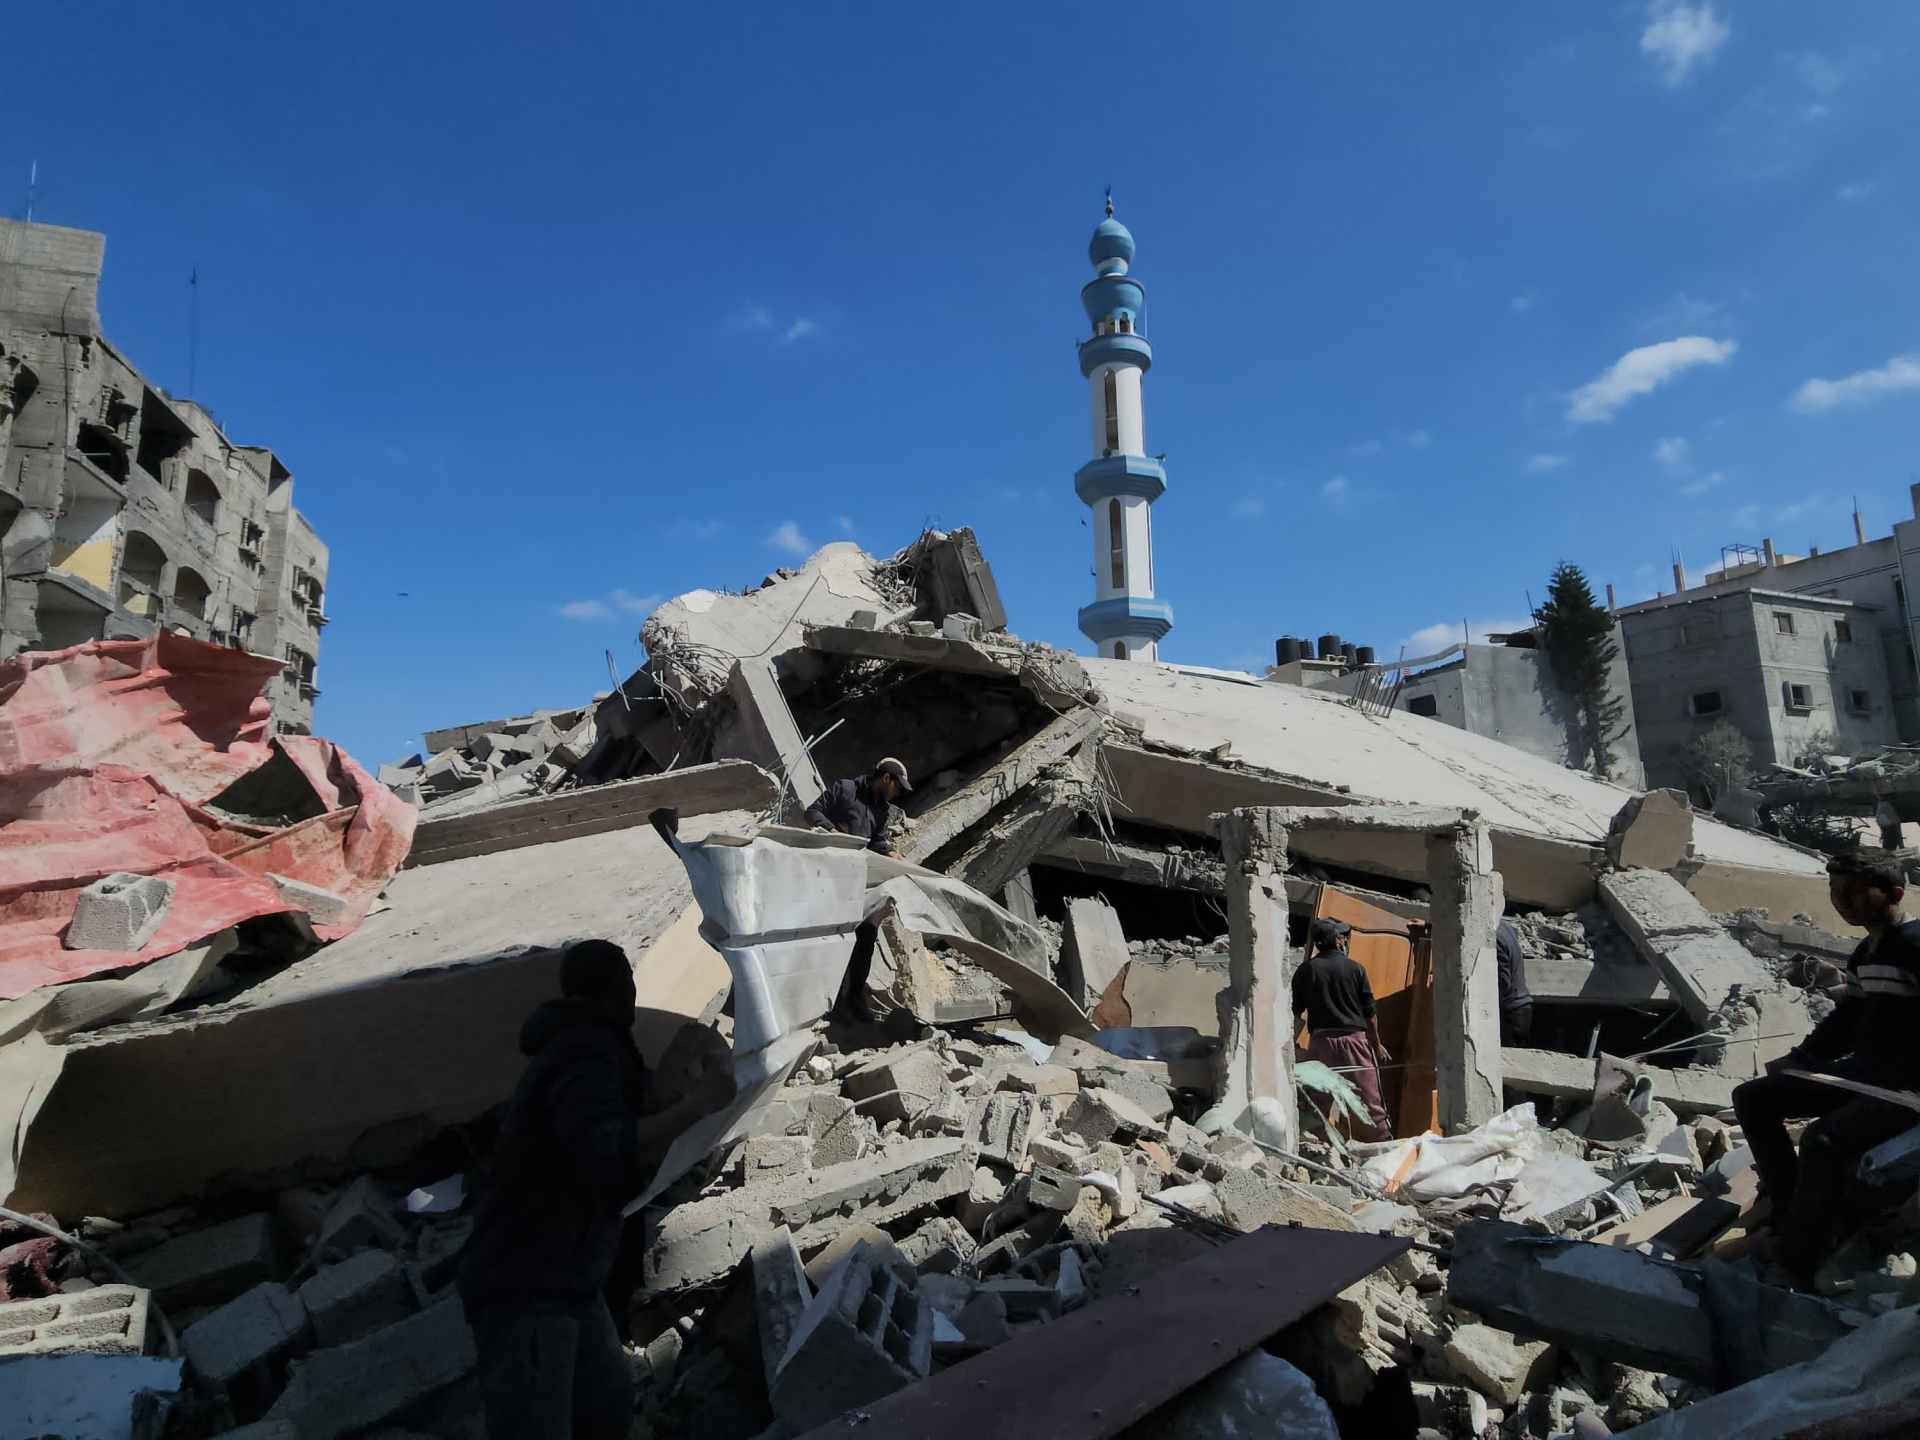 هيئات إغاثية تندد بوضع غزة “الأكثر من كارثي” | أخبار – البوكس نيوز